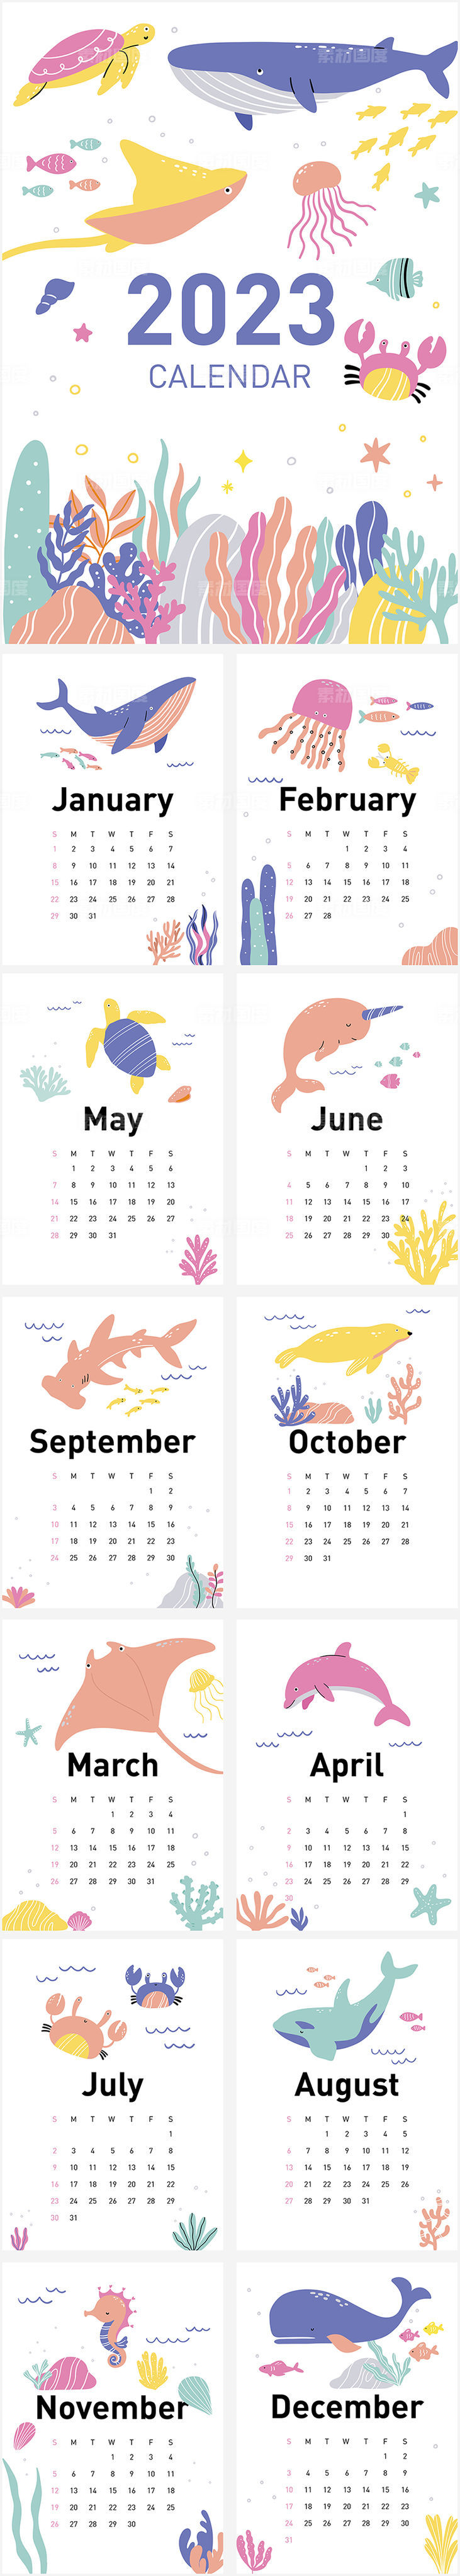 2023年海洋动物日历卡通插画台历手绘可爱活动物料赠品海龟